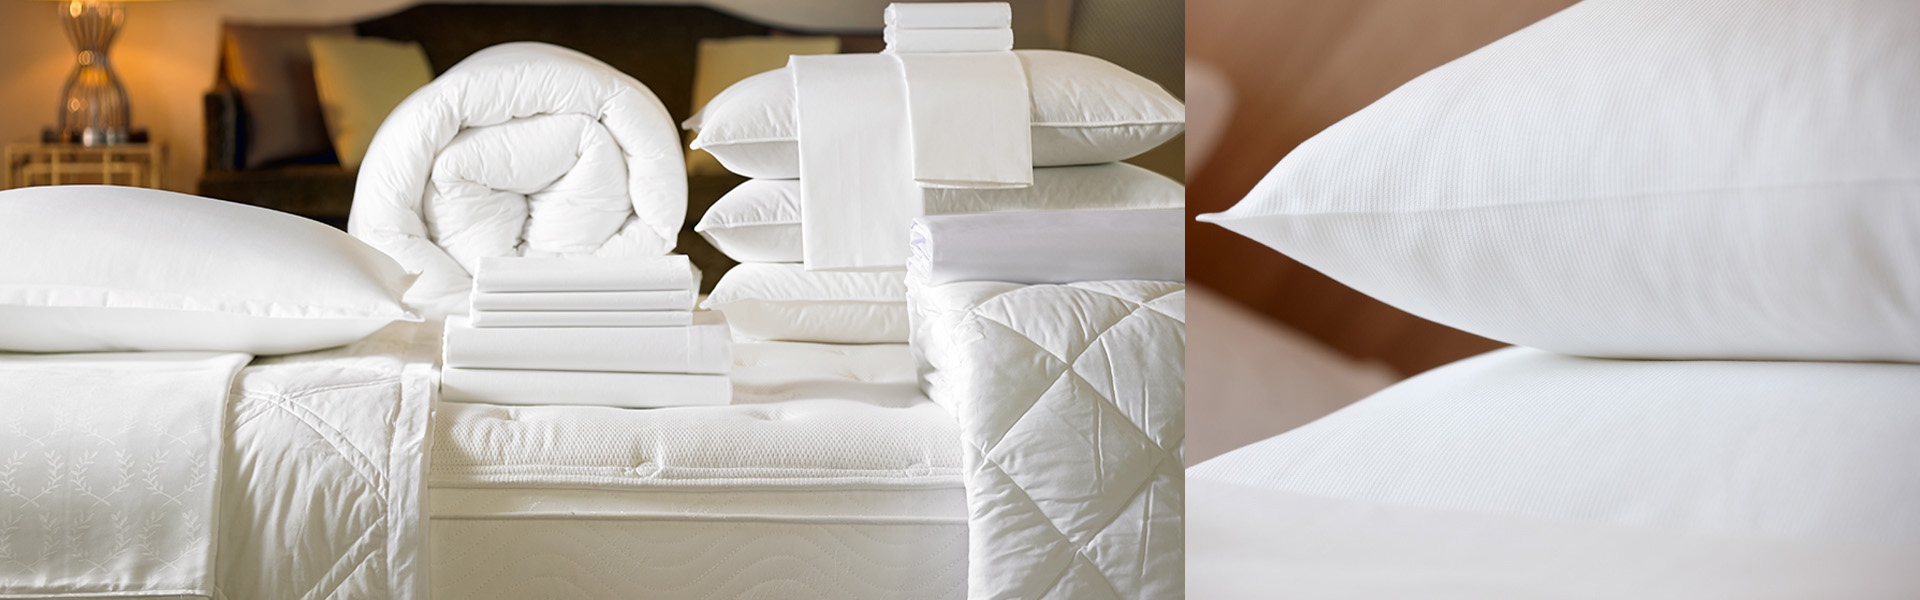 hotel-textile-manufacturer-blanket-duvets-bedsheet.jpg